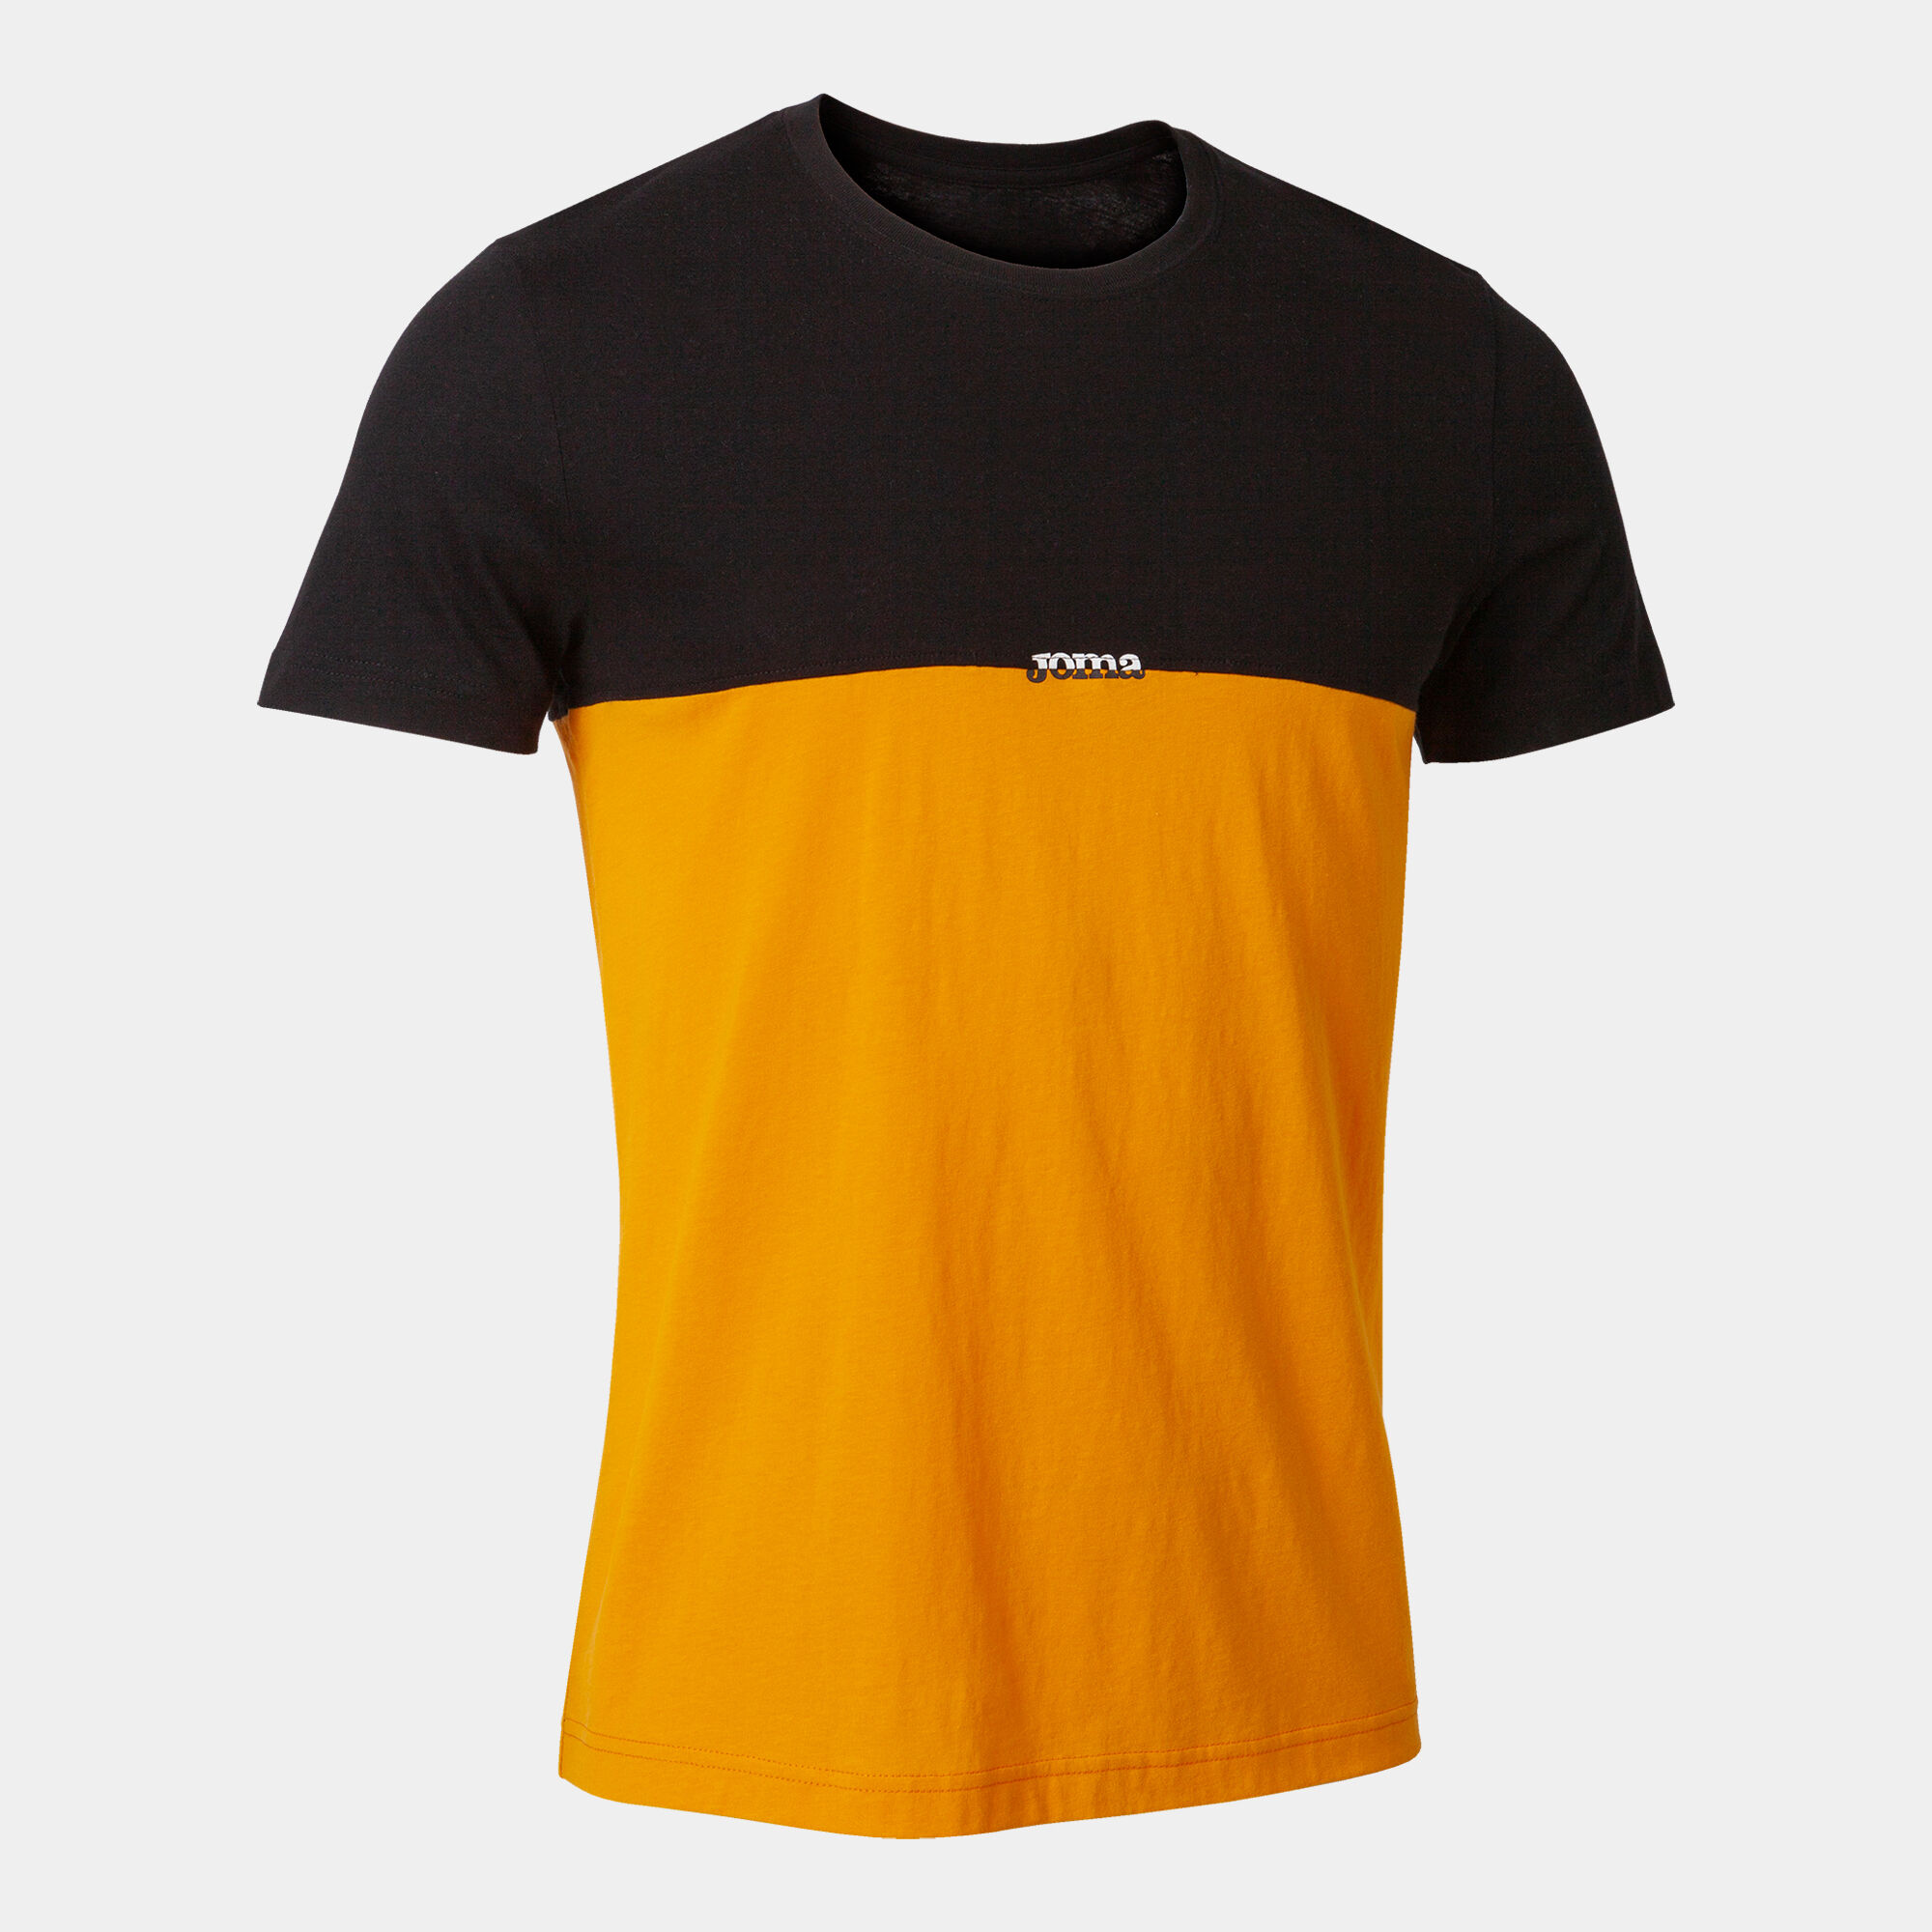 Shirt short sleeve man California black orange